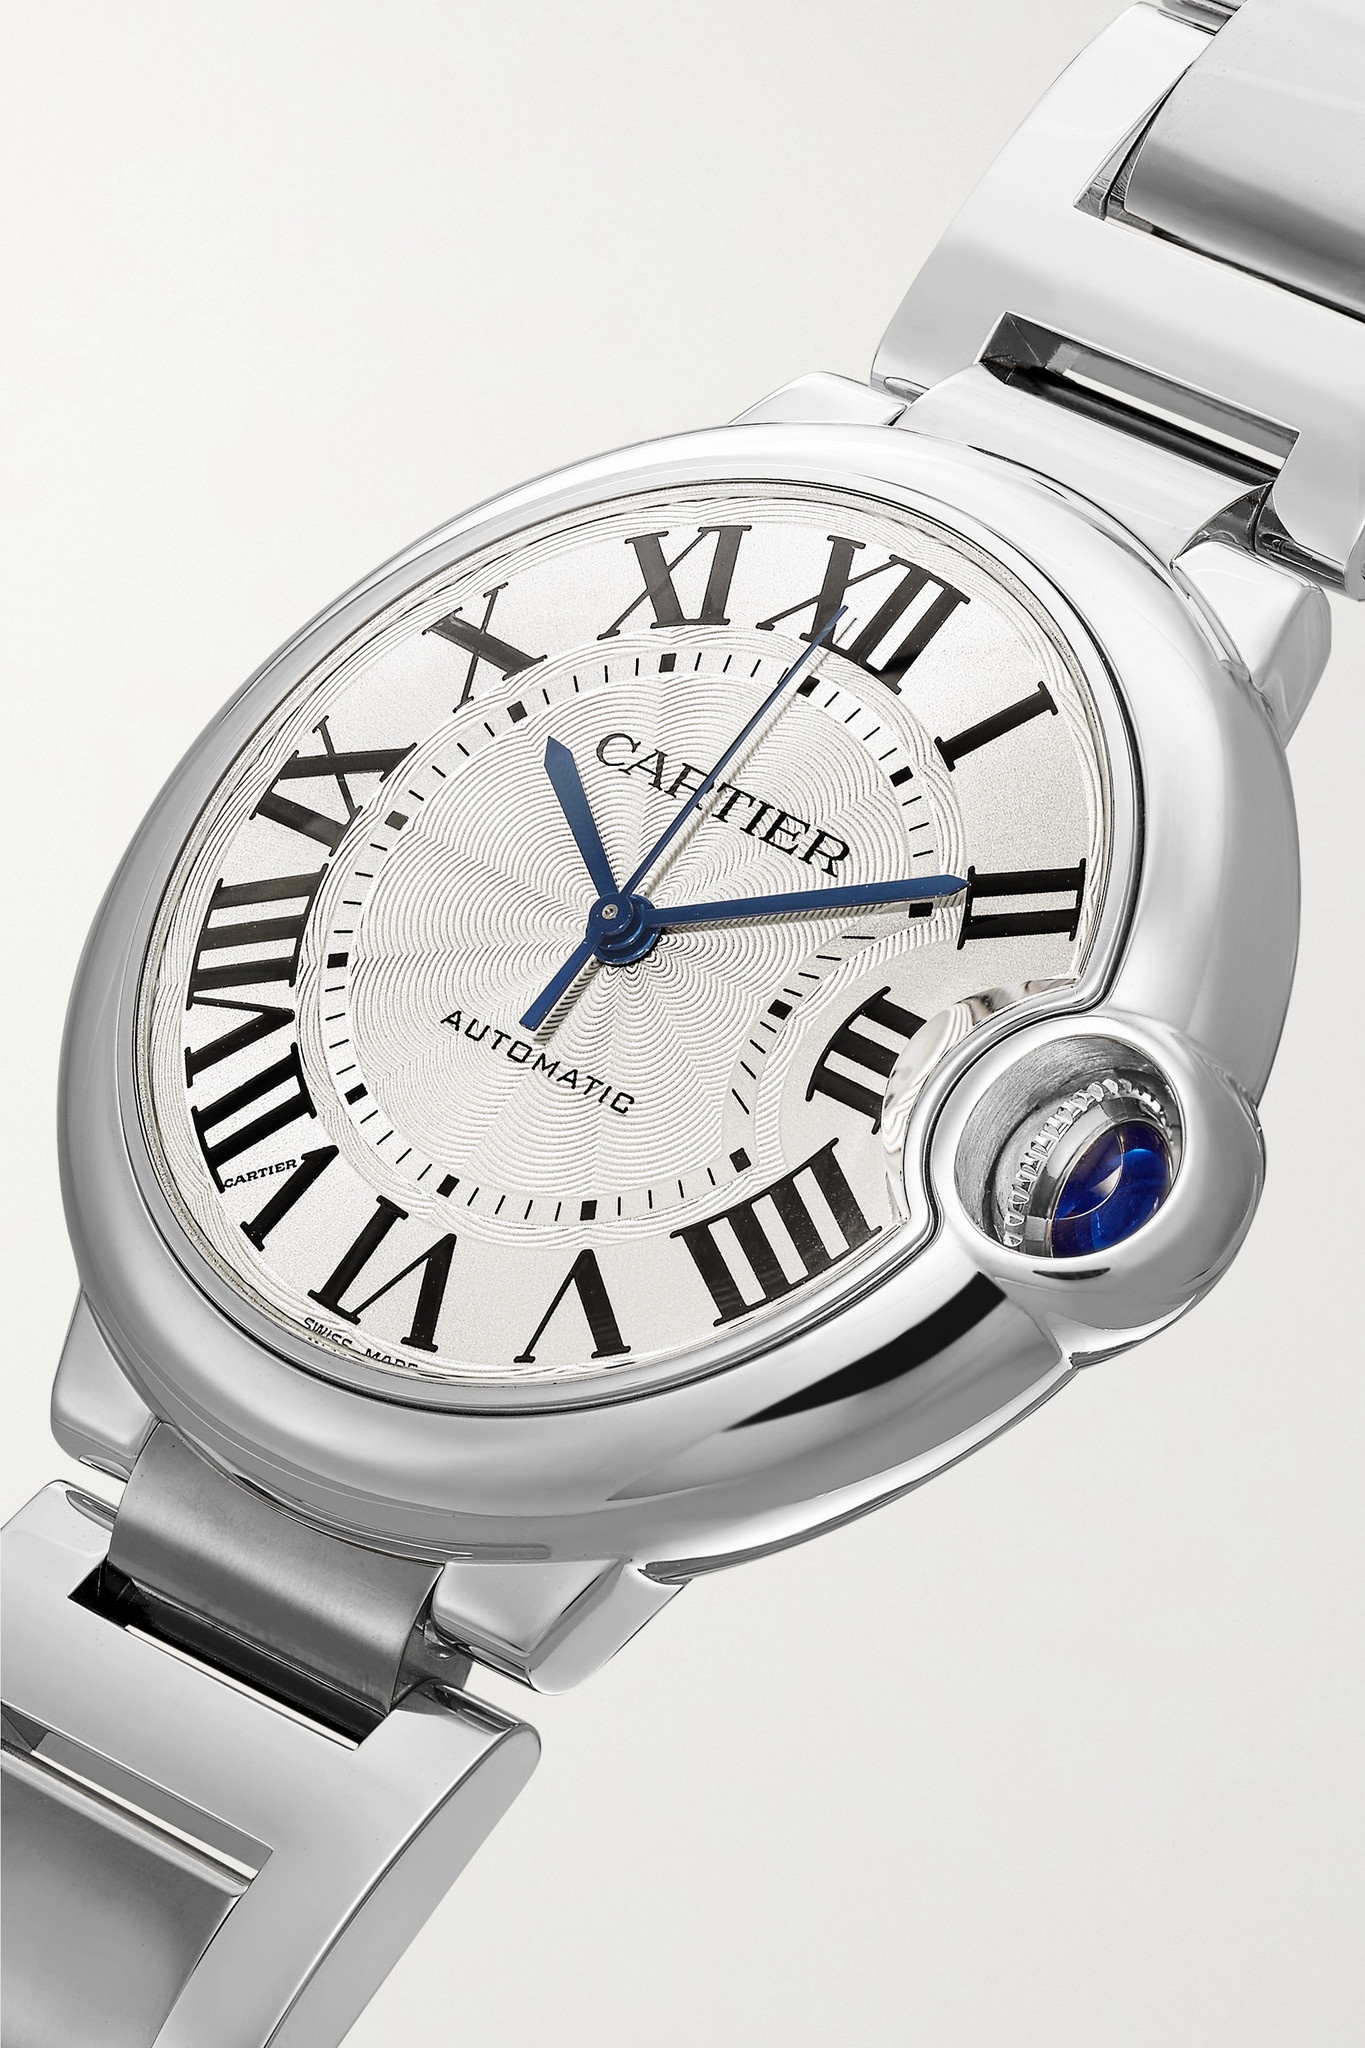 Ballon Bleu de Cartier Automatic 36.6mm stainless steel watch - 3